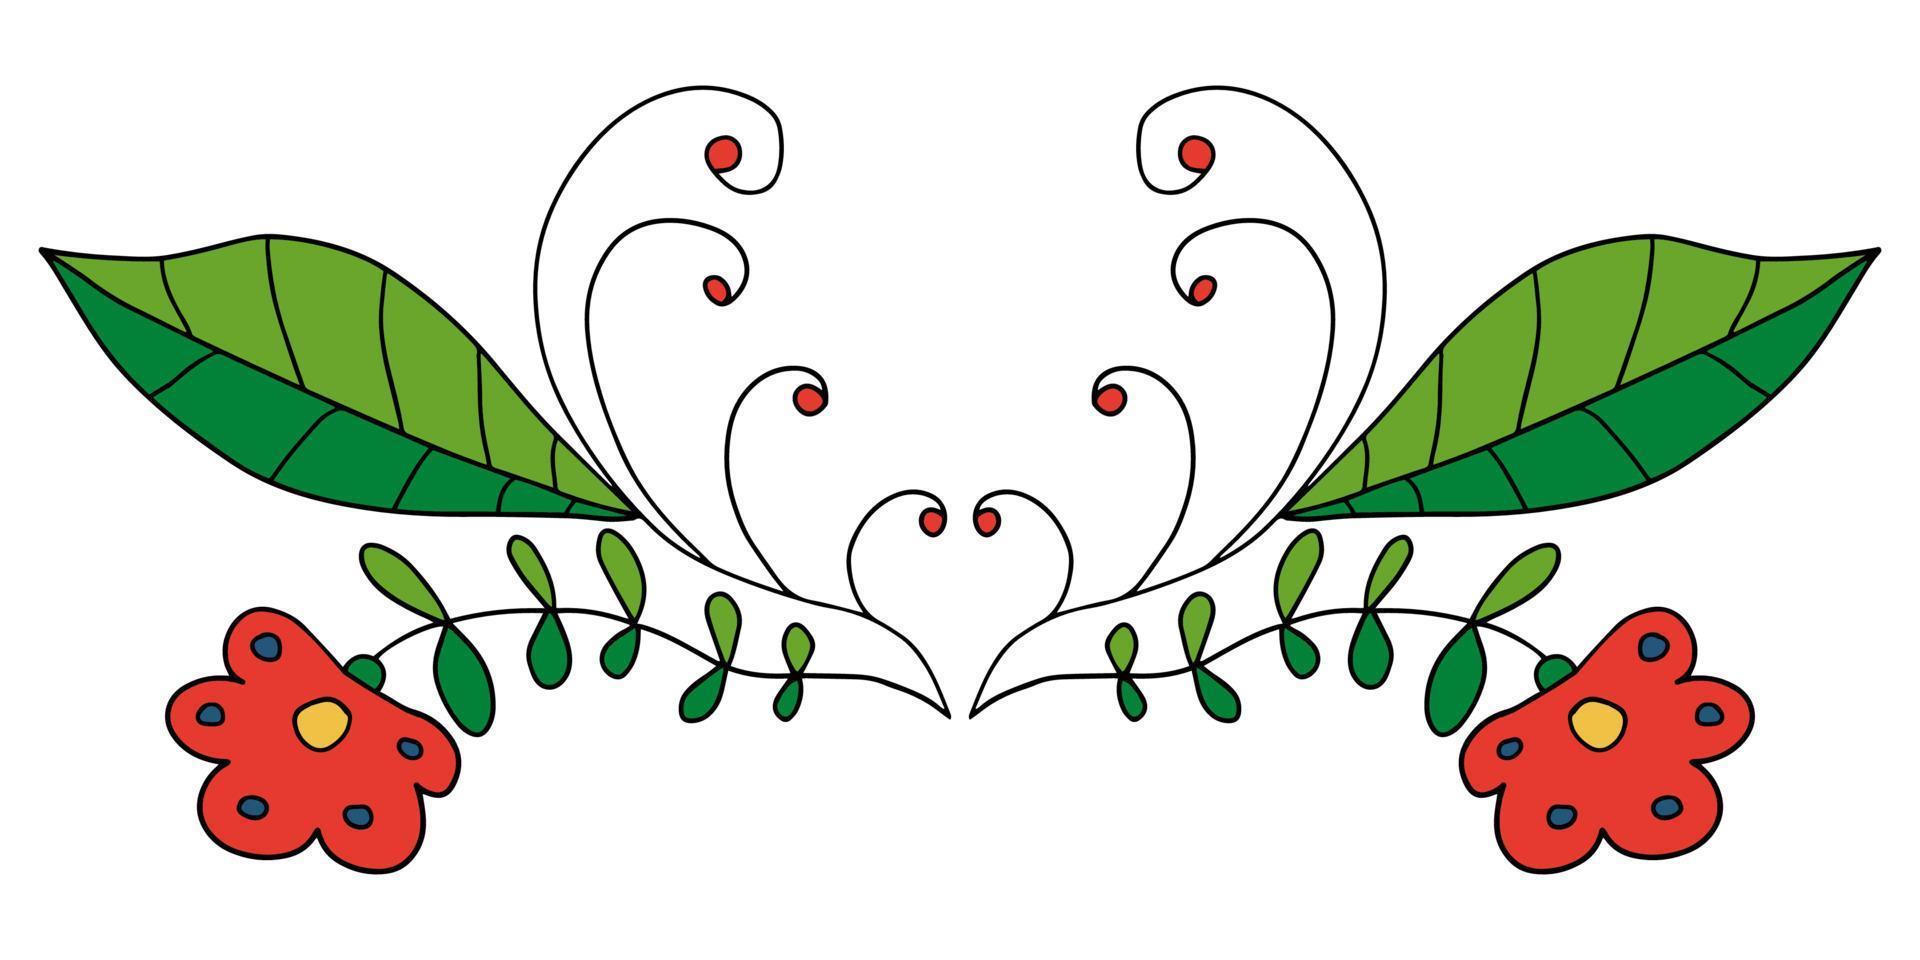 Blumenteiler der abstrakten Gekritzelkarikatur lokalisiert auf weißem Hintergrund. Sprossen mit Blättern und Beeren. vektor